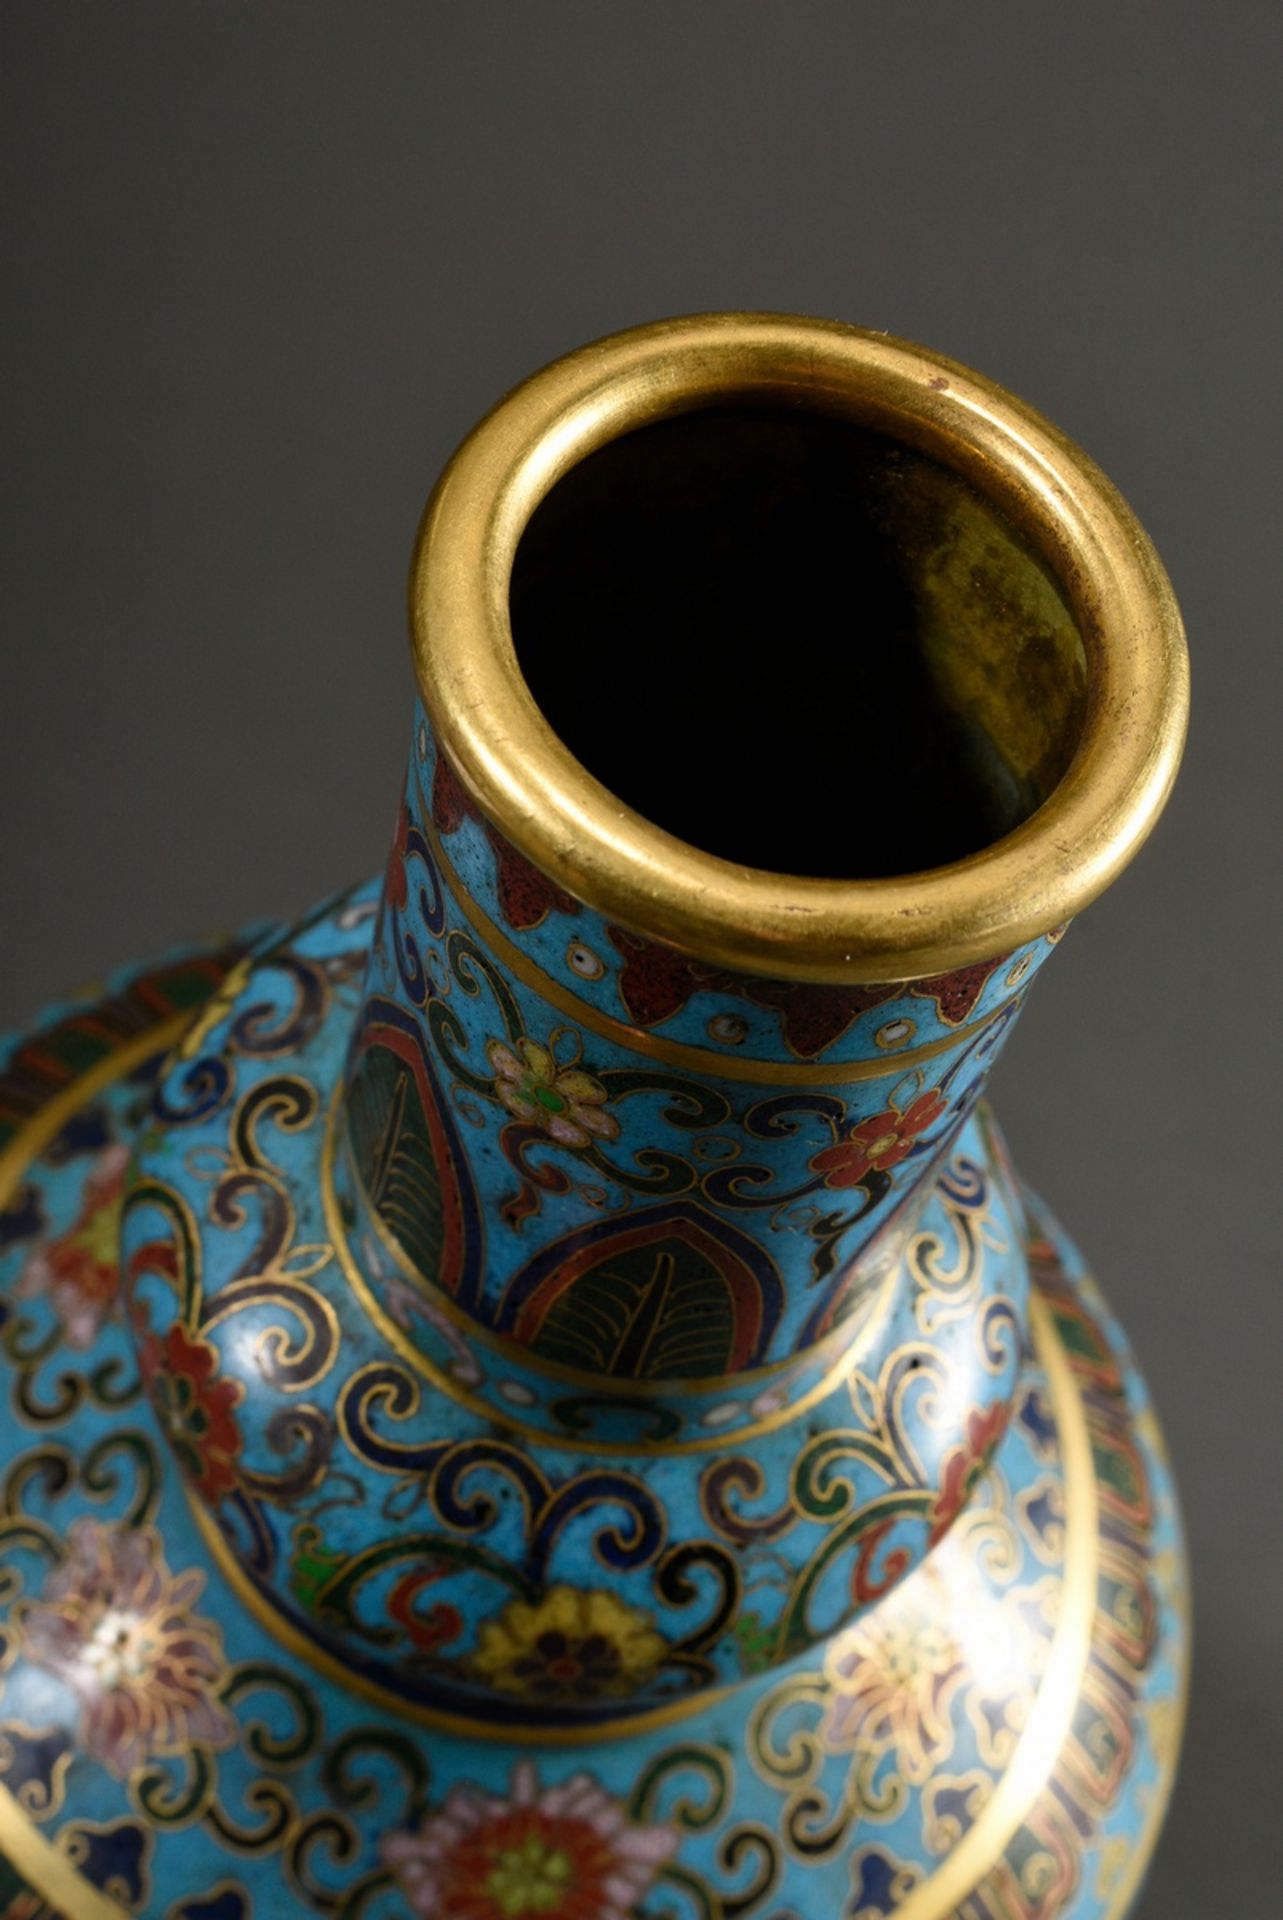 Cloisonné "Holy Water" Vase mit feuervergoldeten Bronze Rändern und reichem floralem Dekor auf türk - Bild 3 aus 8